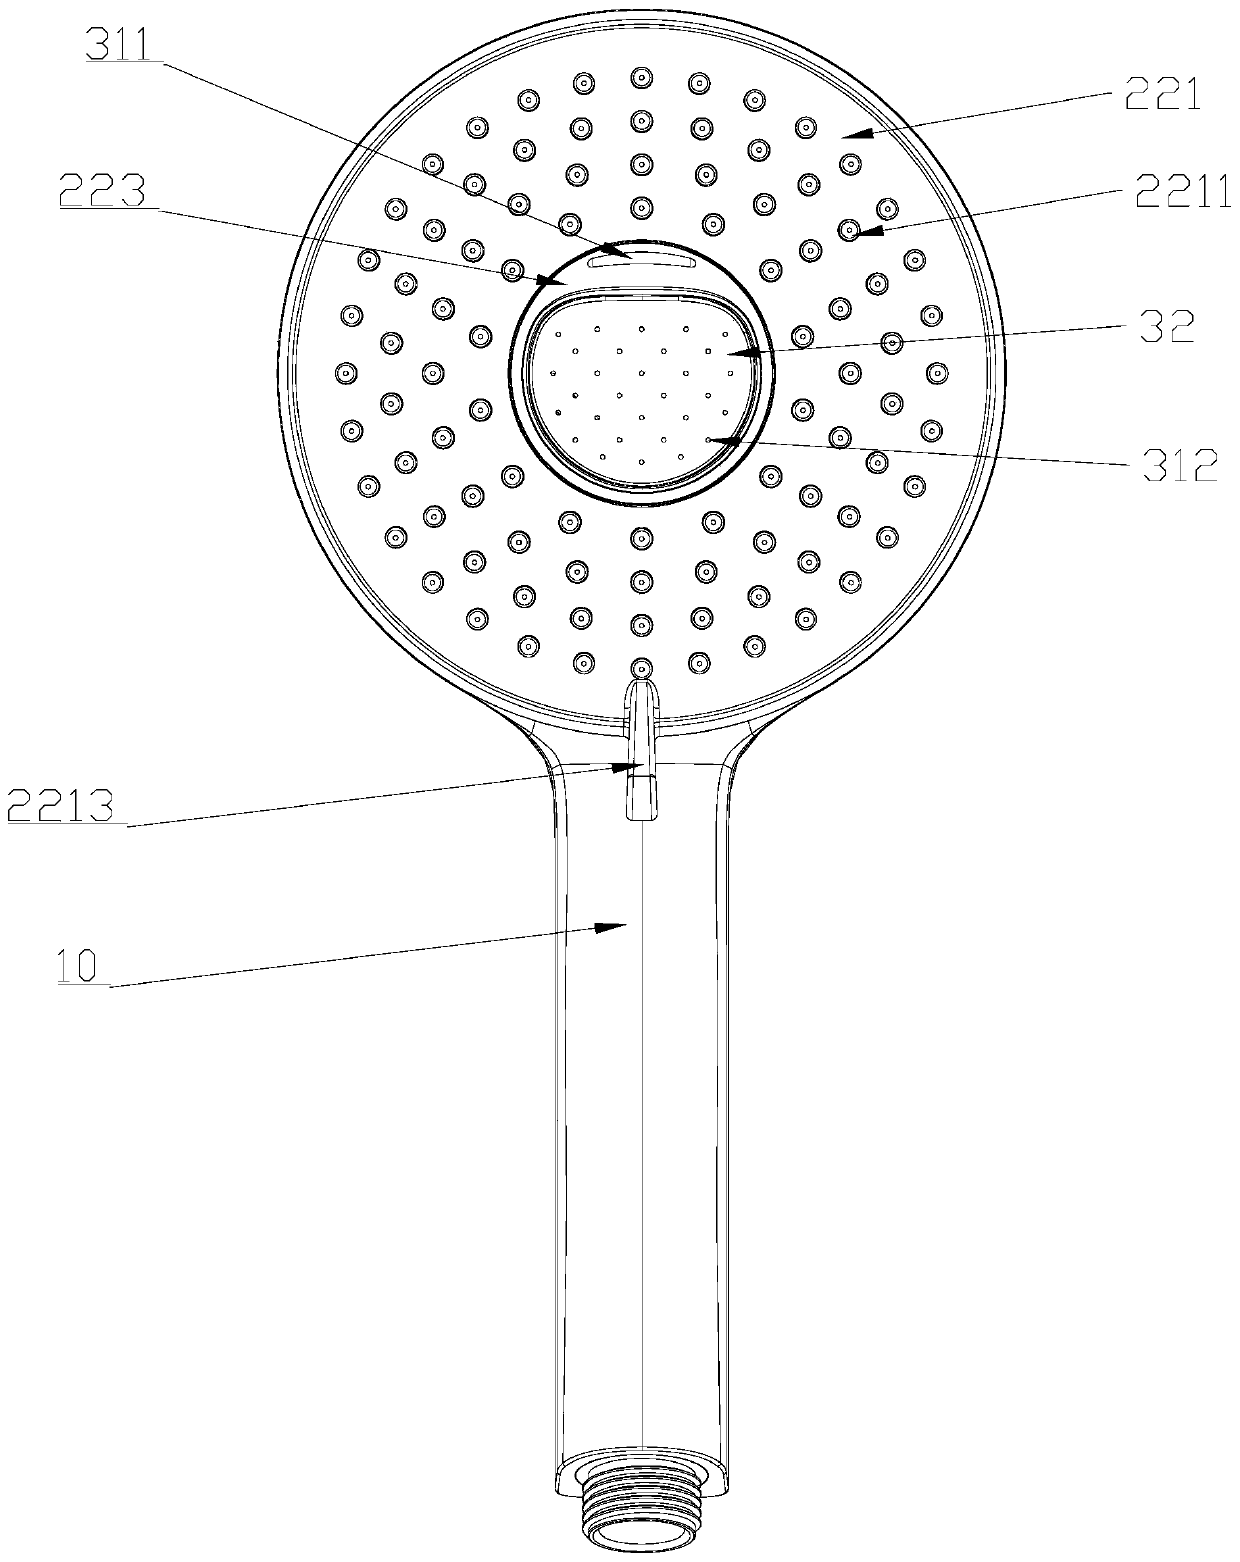 Shower head capable of discharging spray gun water